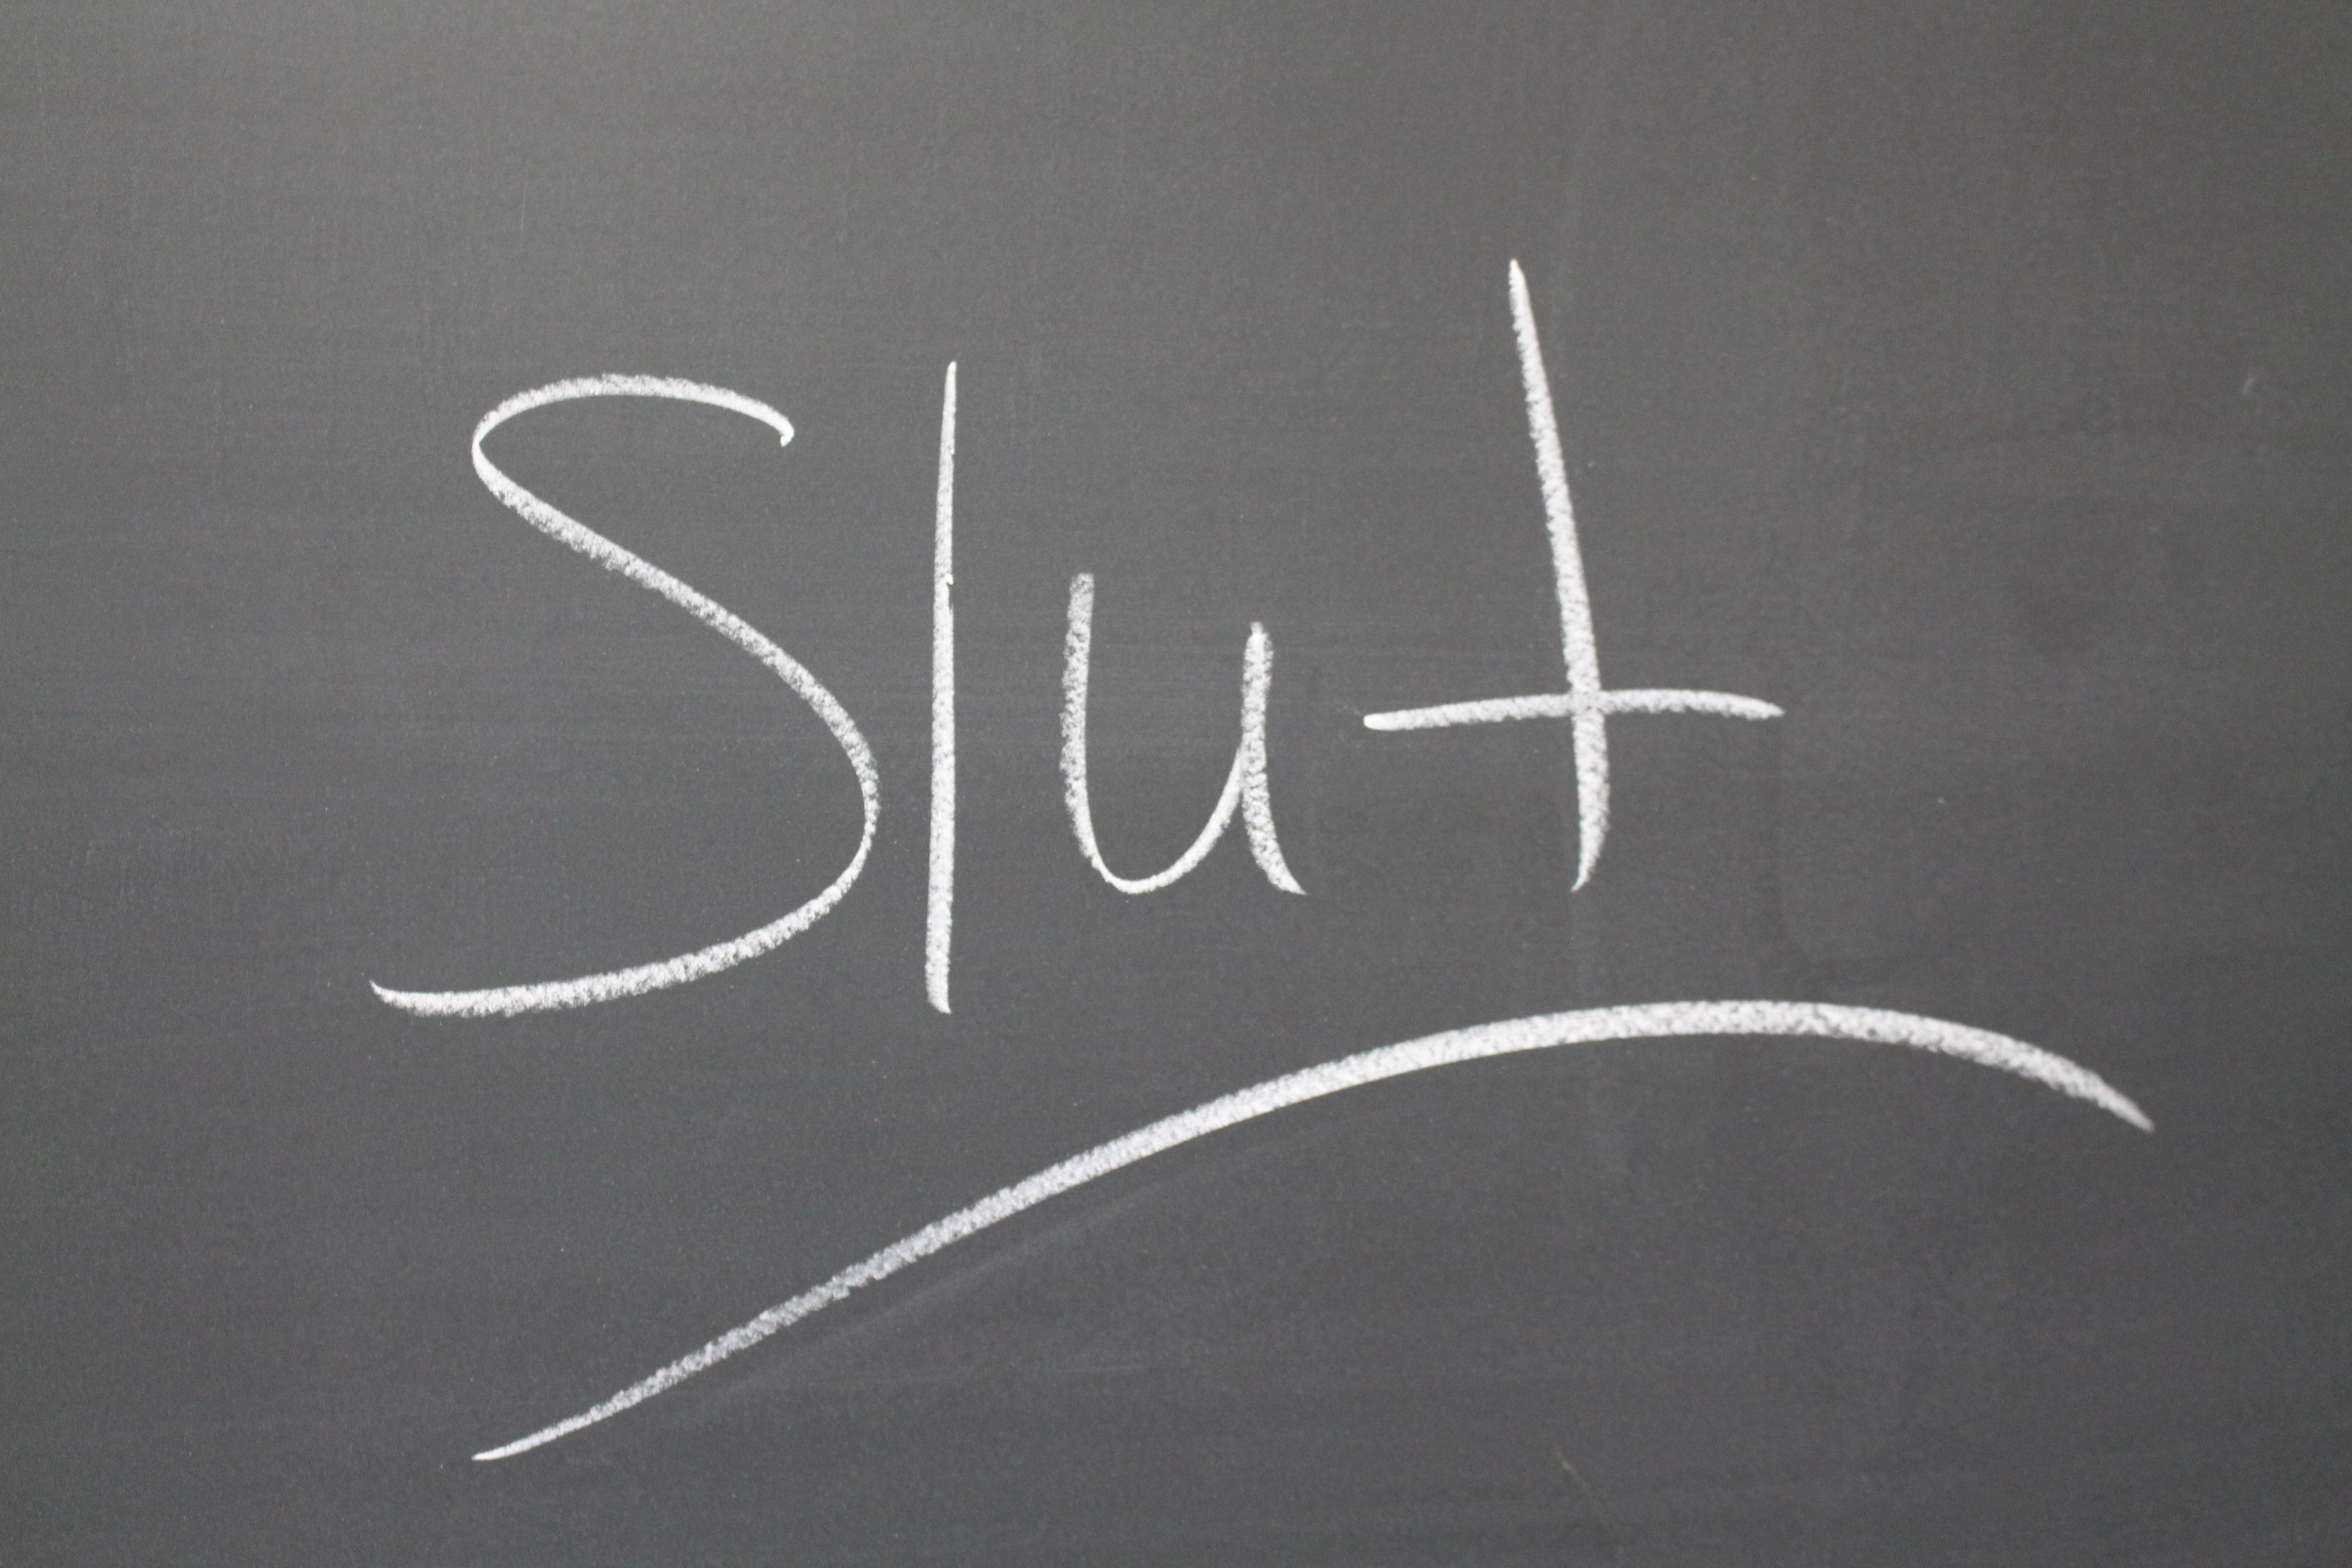 What Does ‘slut Mean